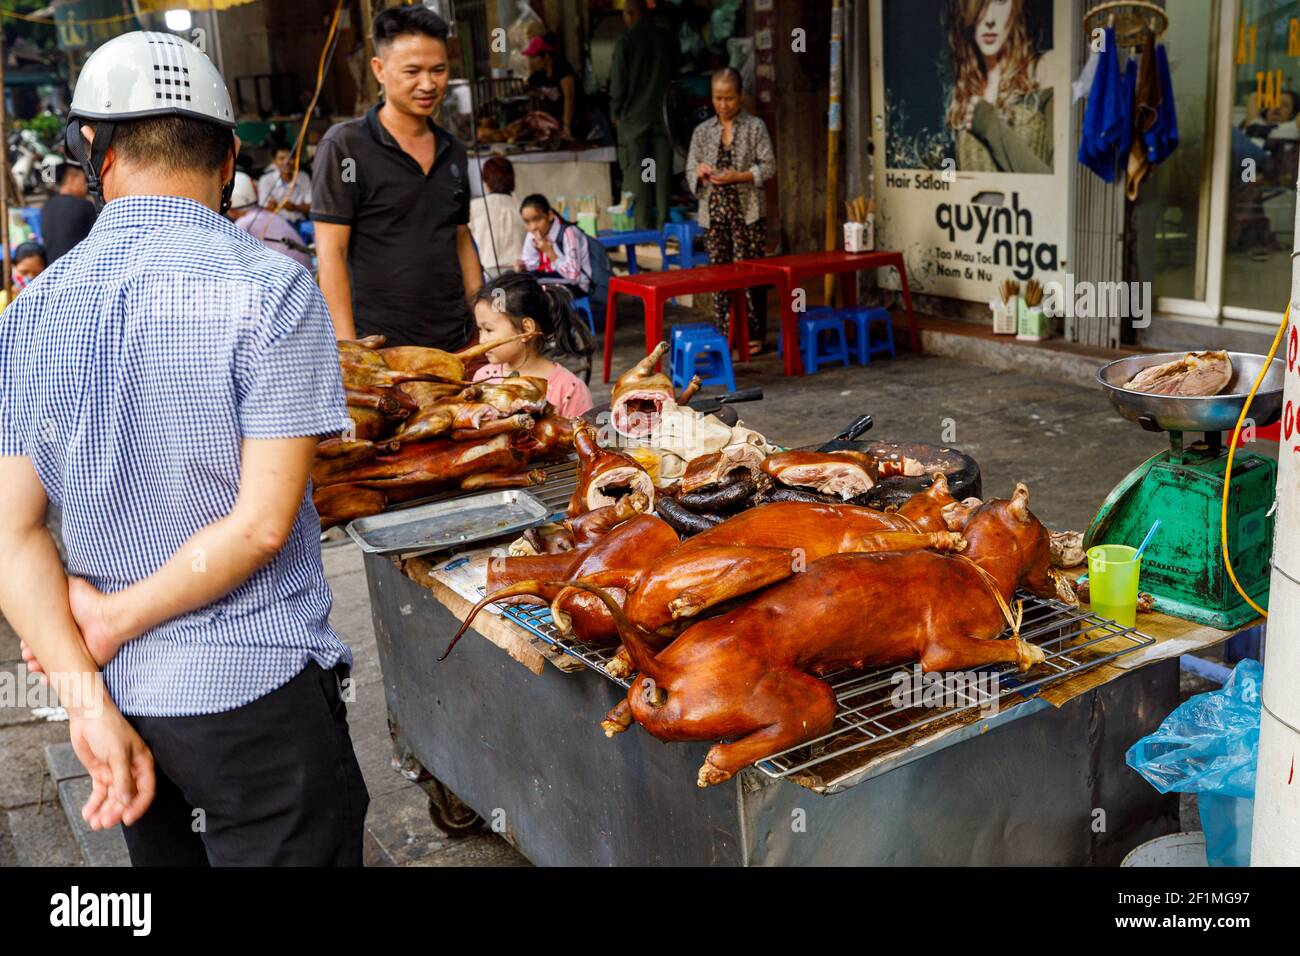 Viande de chien sur le grill dans les rues de Hanoi Au Vietnam Photo Stock  - Alamy